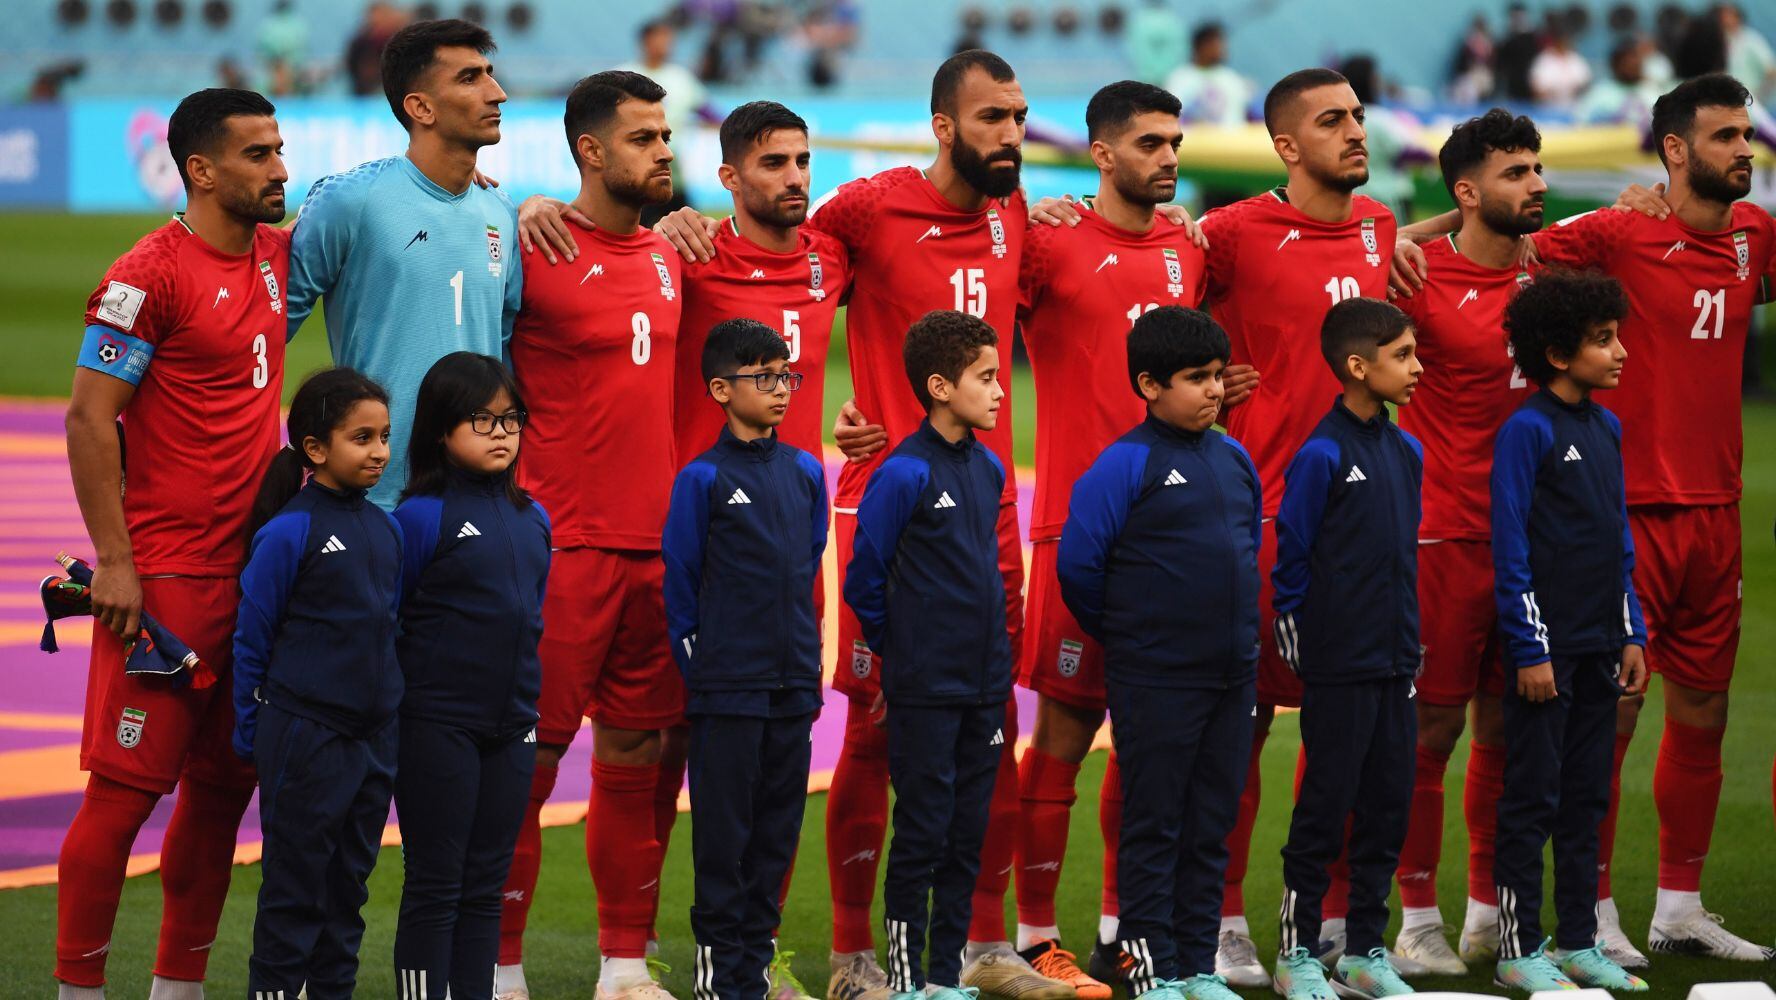 Copa Mundial de Futbol: Selección de Irán no canta el himno en protesta por muerte de Masha Amini